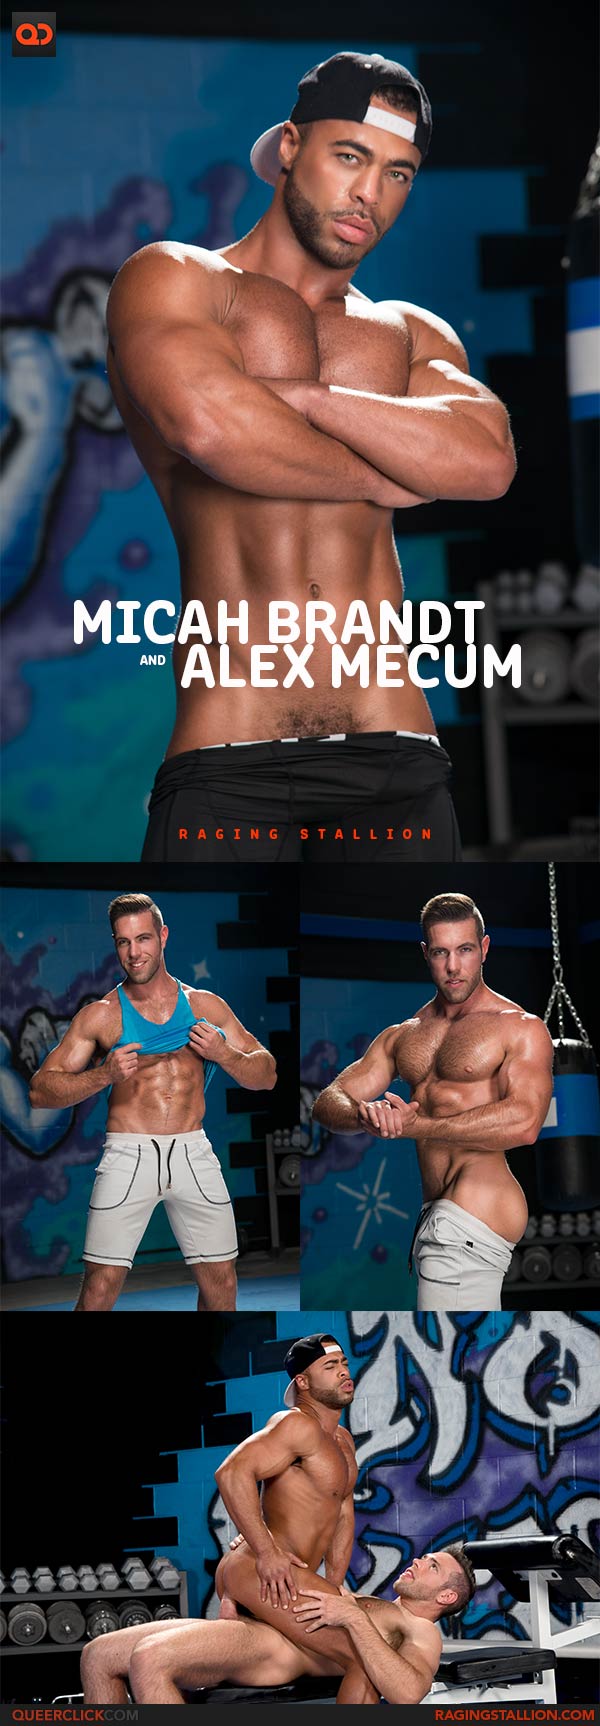 RagingStallion: Micah Brandt and Alex Mecum